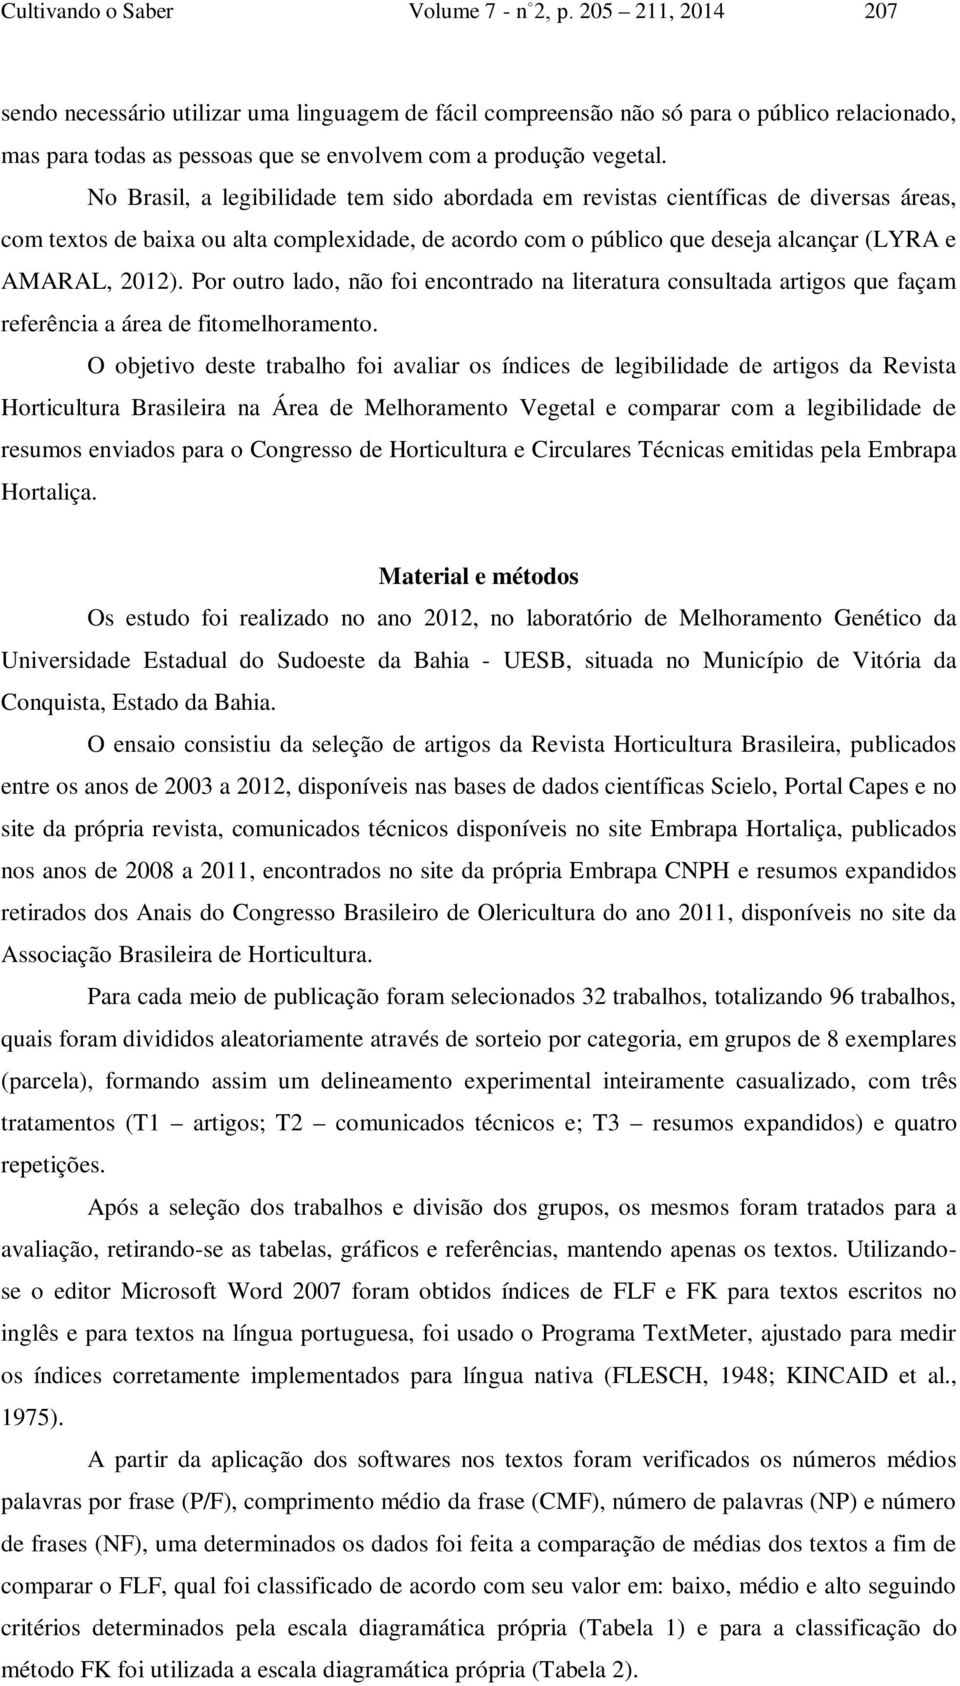 No Brasil, a legibilidade tem sido abordada em revistas científicas de diversas áreas, com textos de baixa ou alta complexidade, de acordo com o público que deseja alcançar (LYRA e AMARAL, 2012).